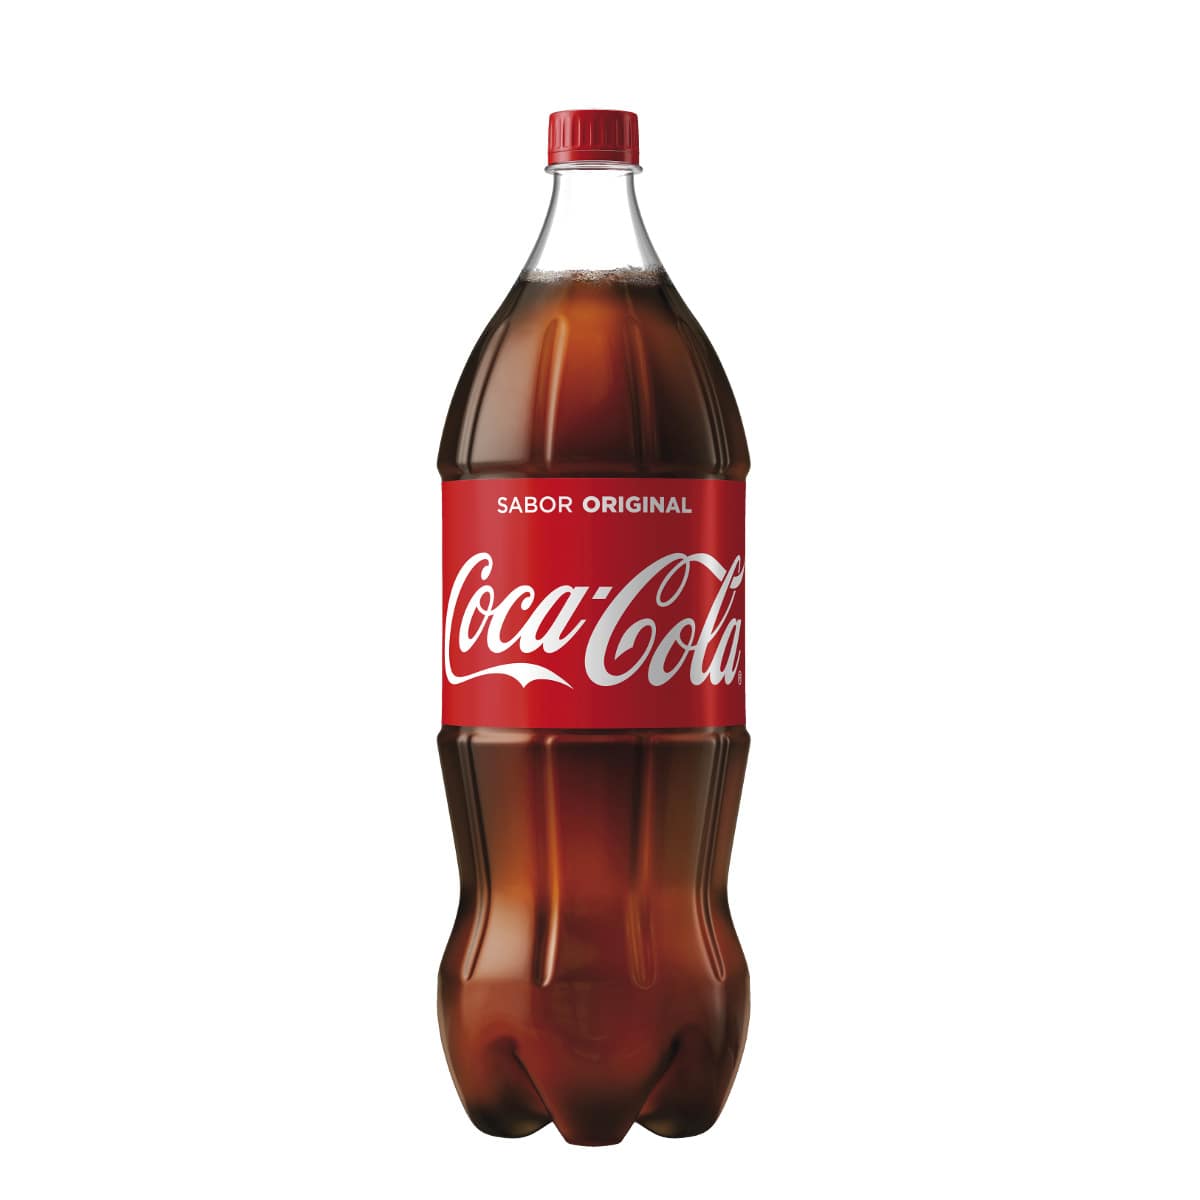 Coca-cola garrafa